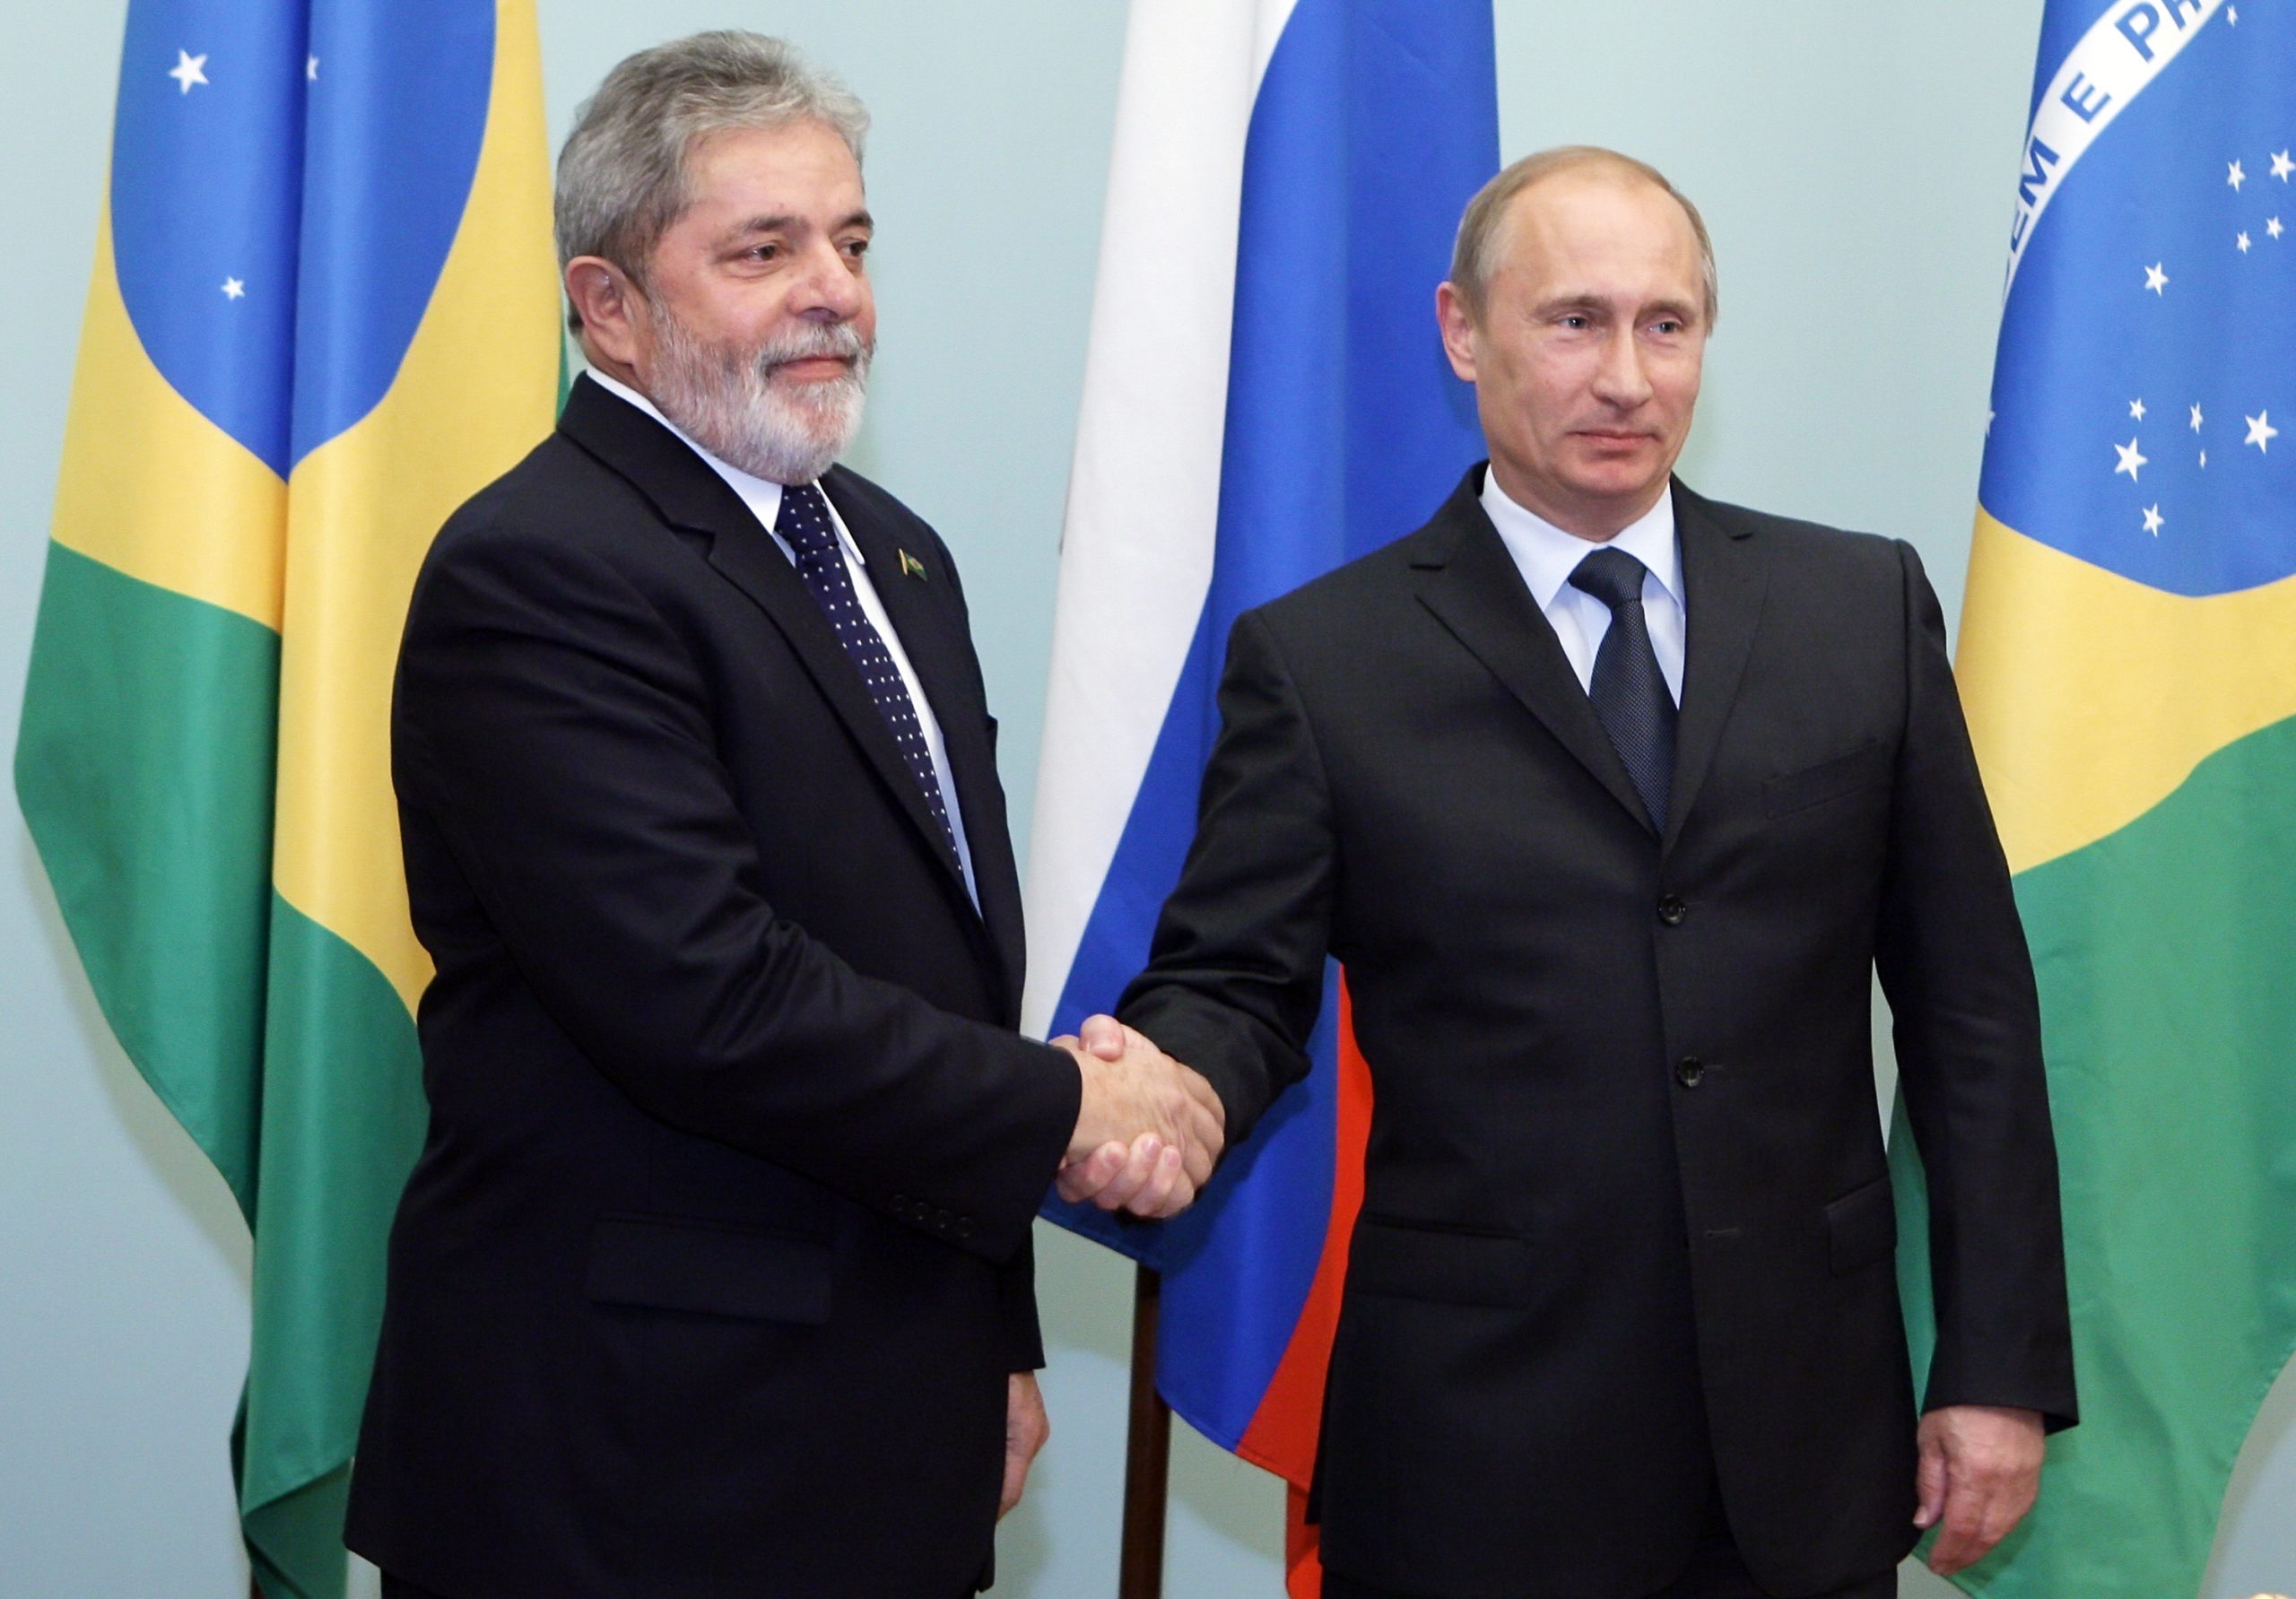 Προβληματισμός στις ΗΠΑ: Ο πρόεδρος της Βραζιλίας Λούλα μίλησε με τον Πούτιν και συμφώνησαν για περαιτέρω ανάπτυξη των BRICS